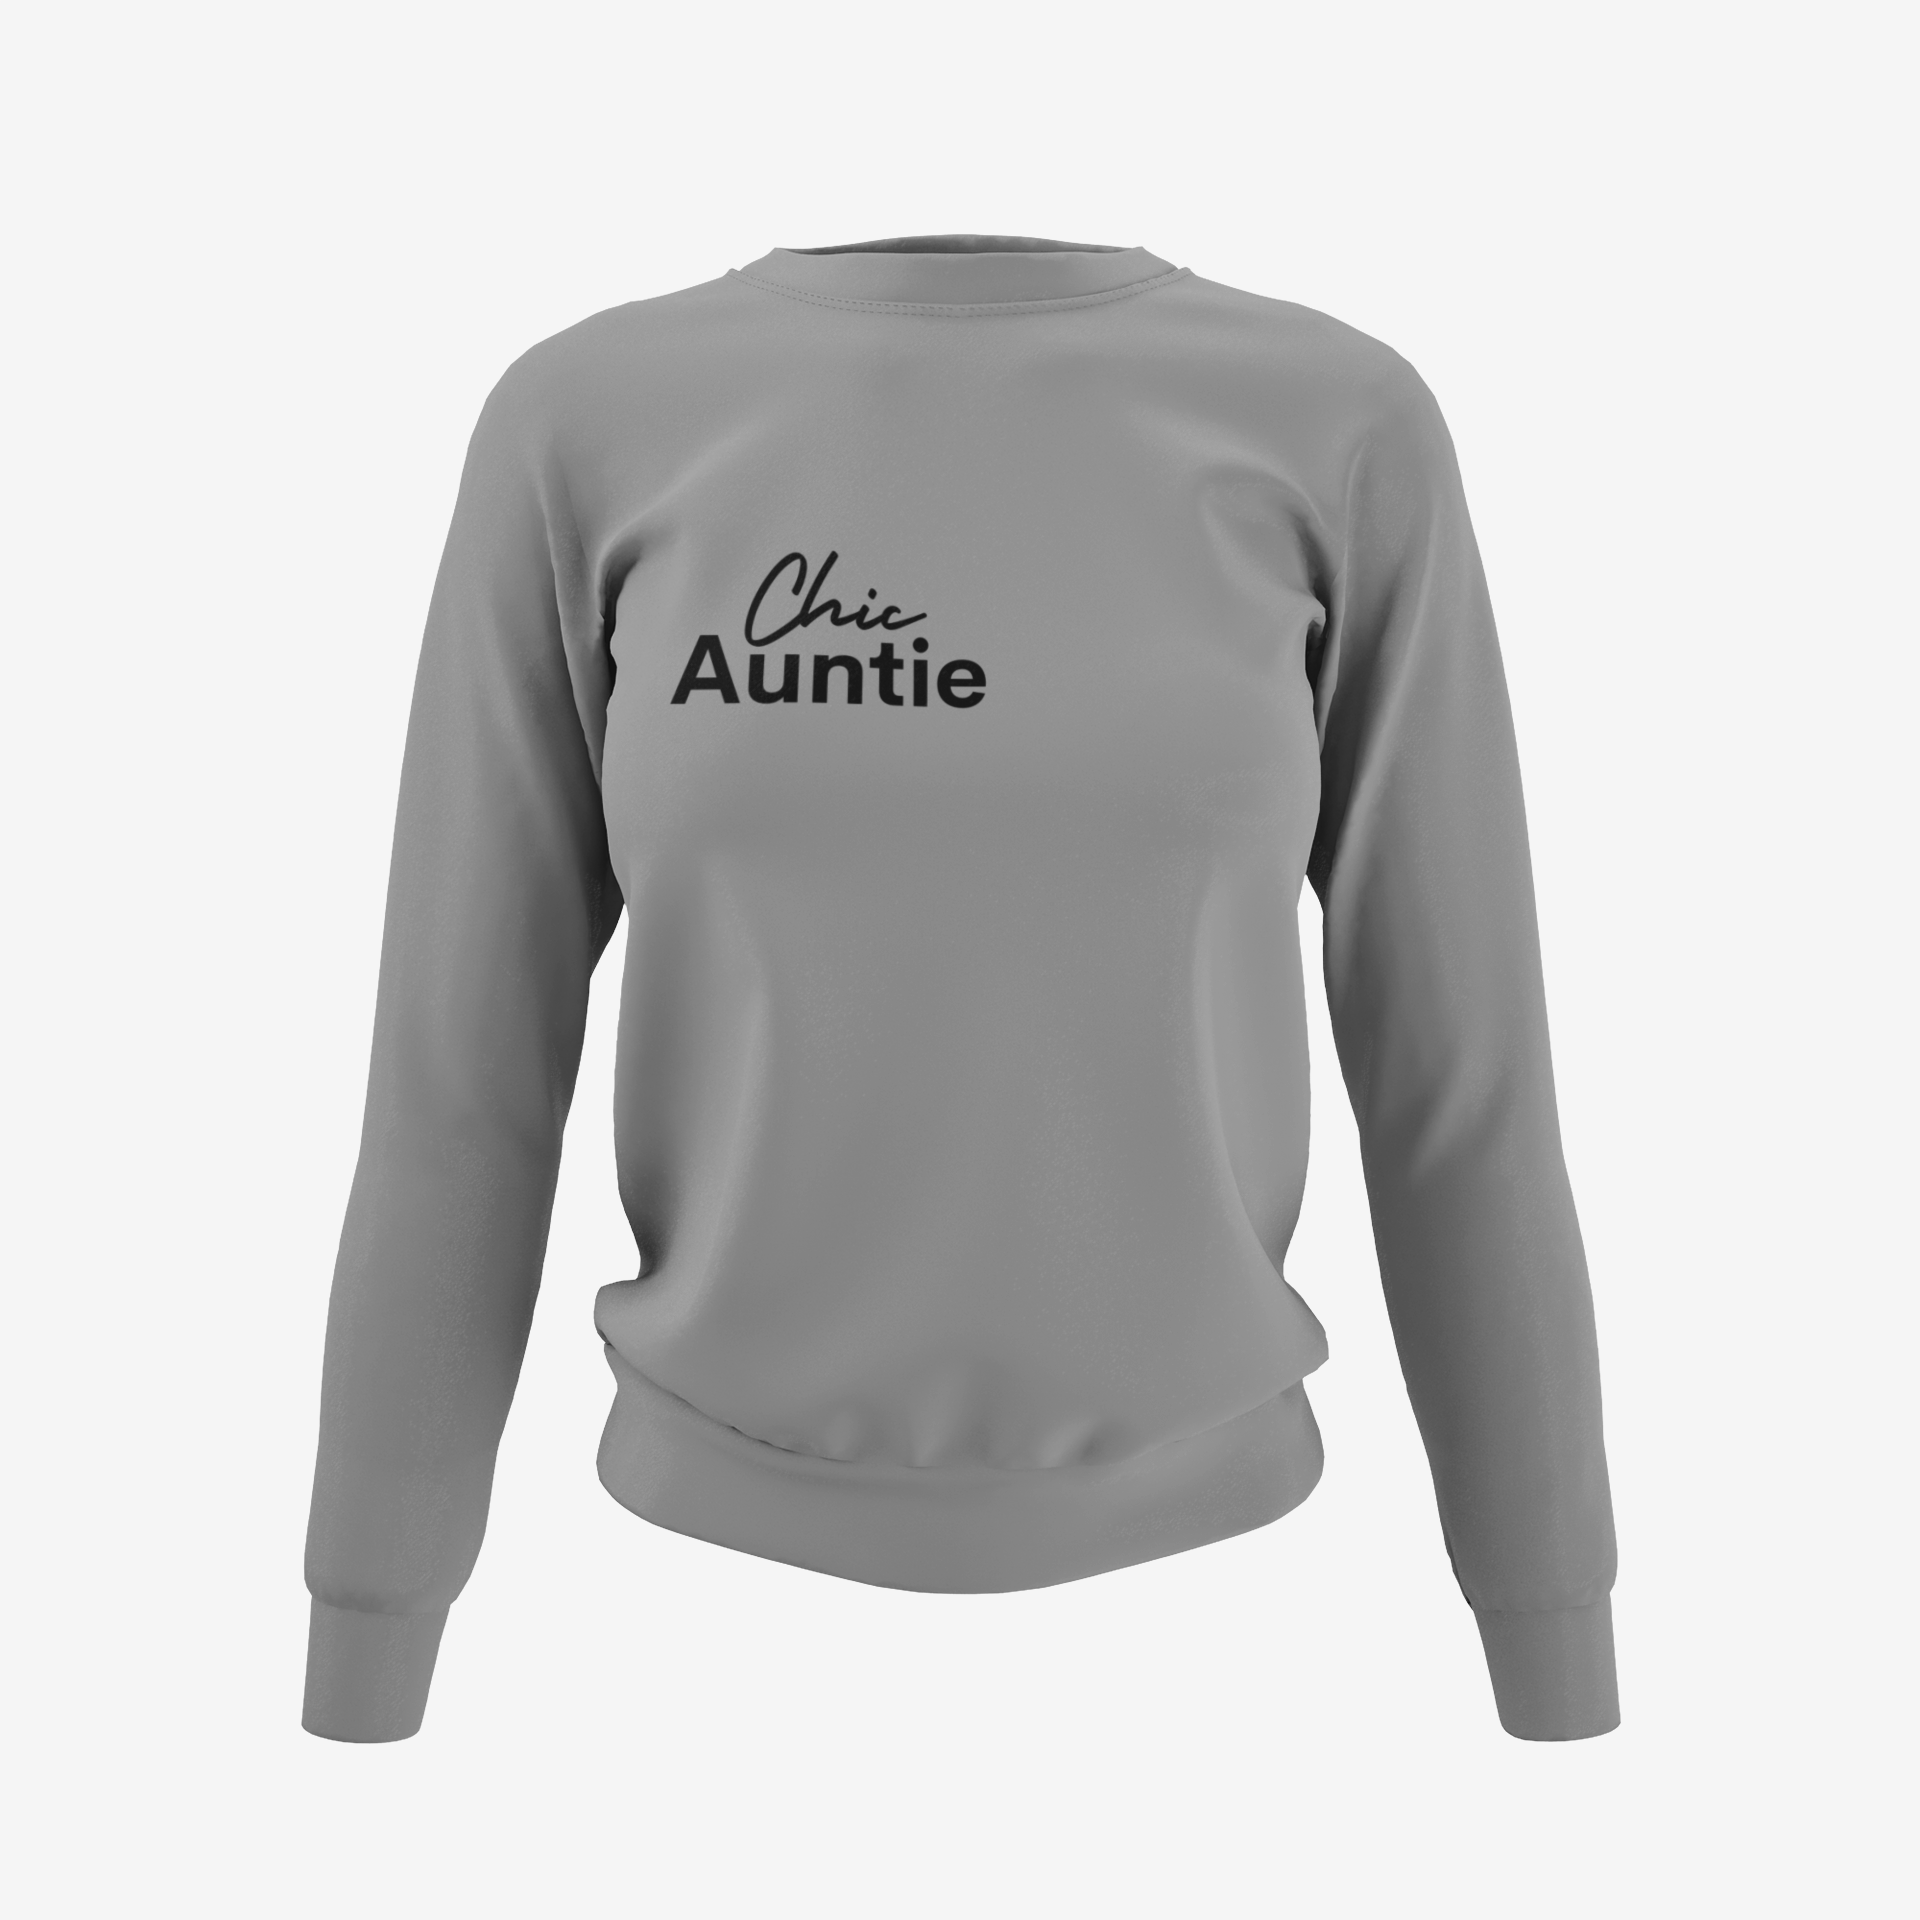 Chic Auntie Sweatshirt